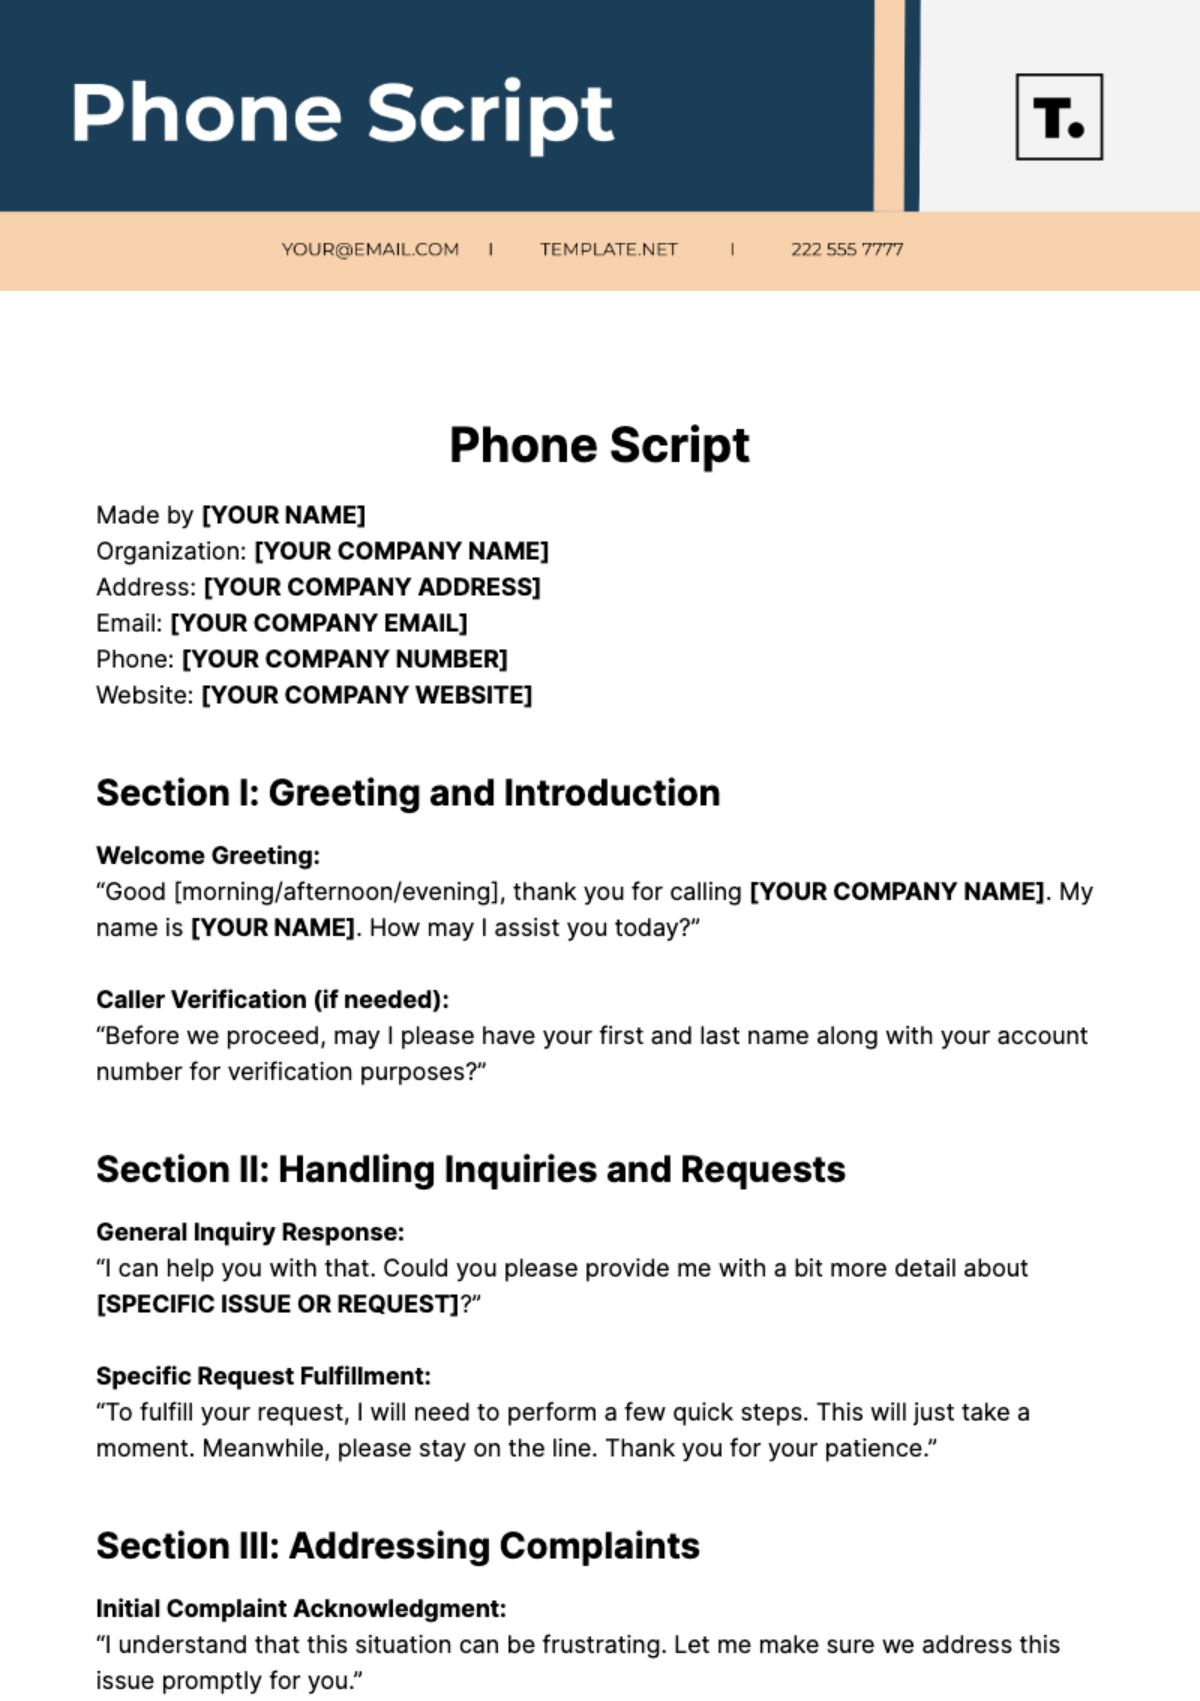 Phone Script Template